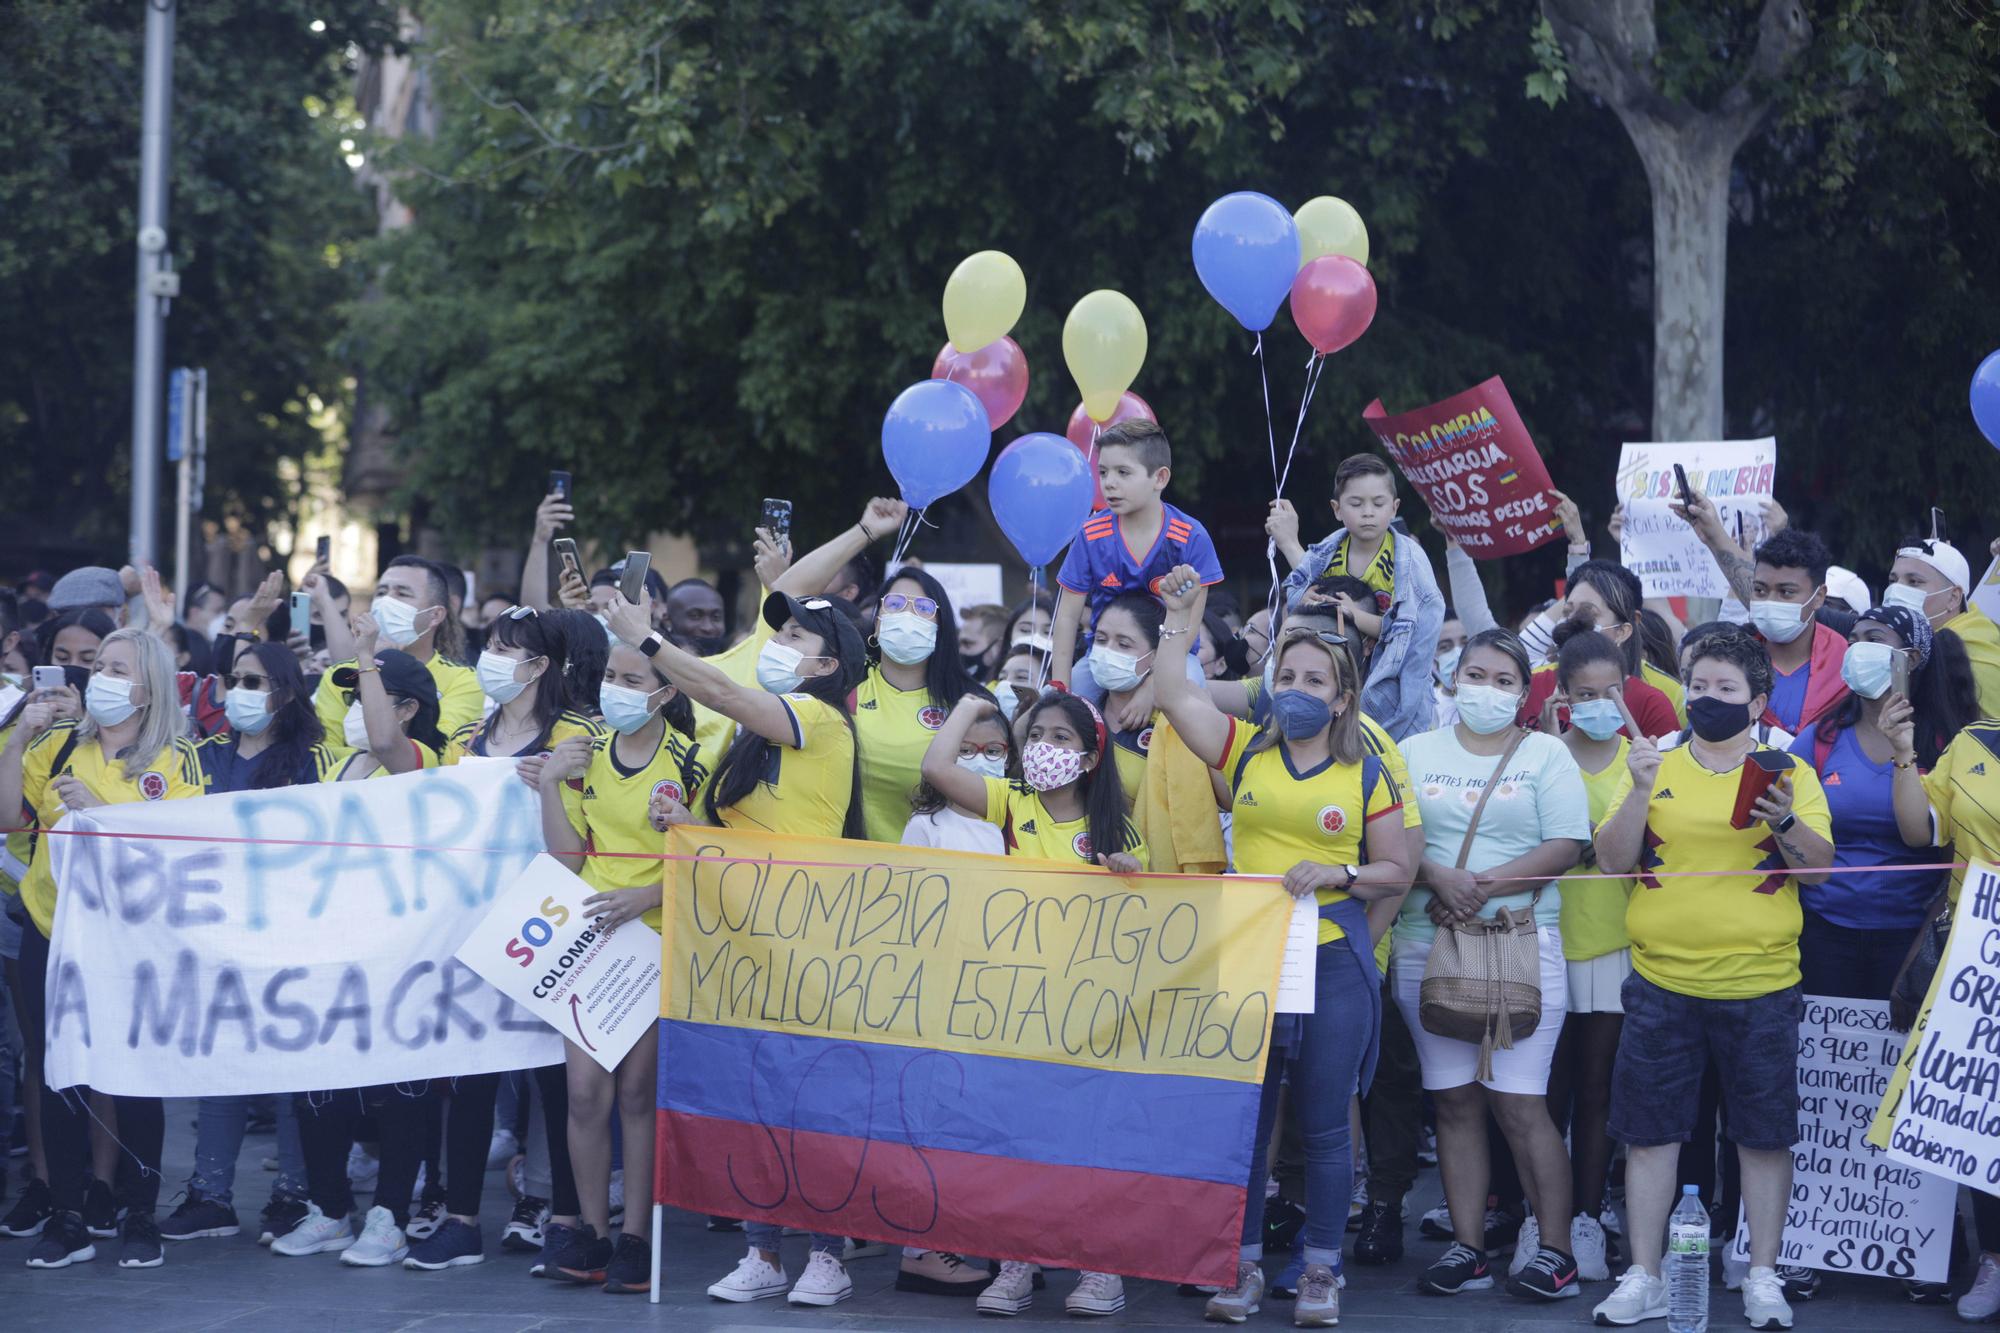 Más de 500 personas se manifiestan en Palma por la libertad de Colombia